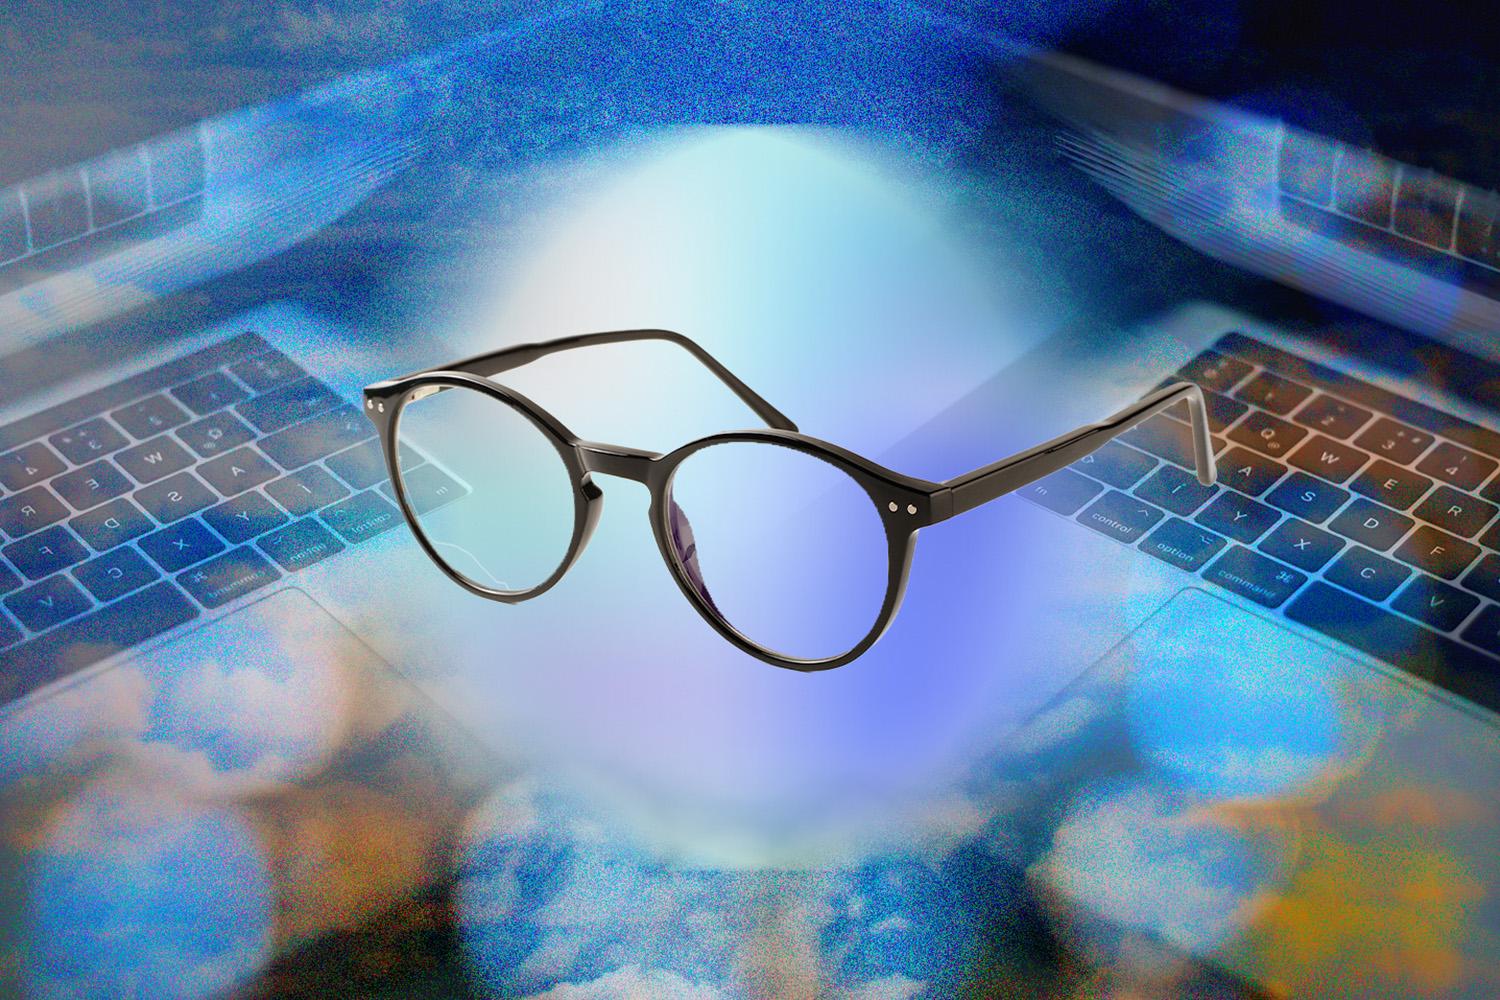 blue-light-glasses-unlikely-to-help-eye-strain-SPACEBAR-Hero.jpg